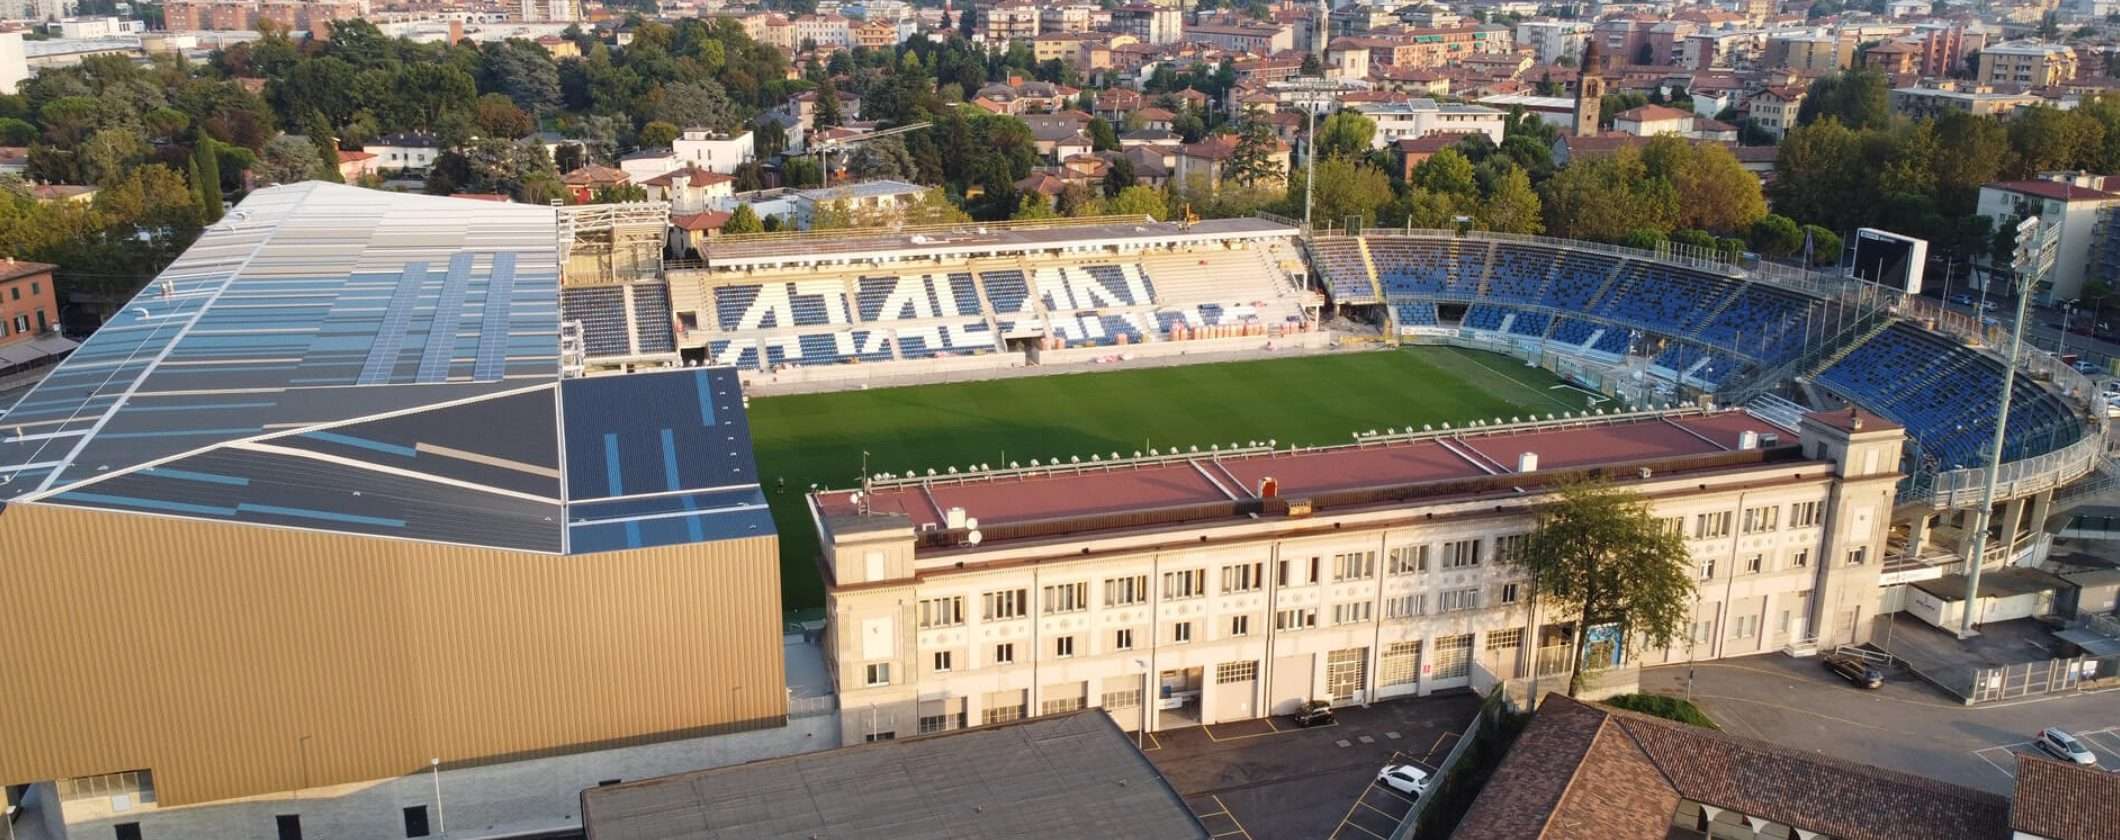 Atalanta-Inter: guida completa per vederla in streaming dall'estero